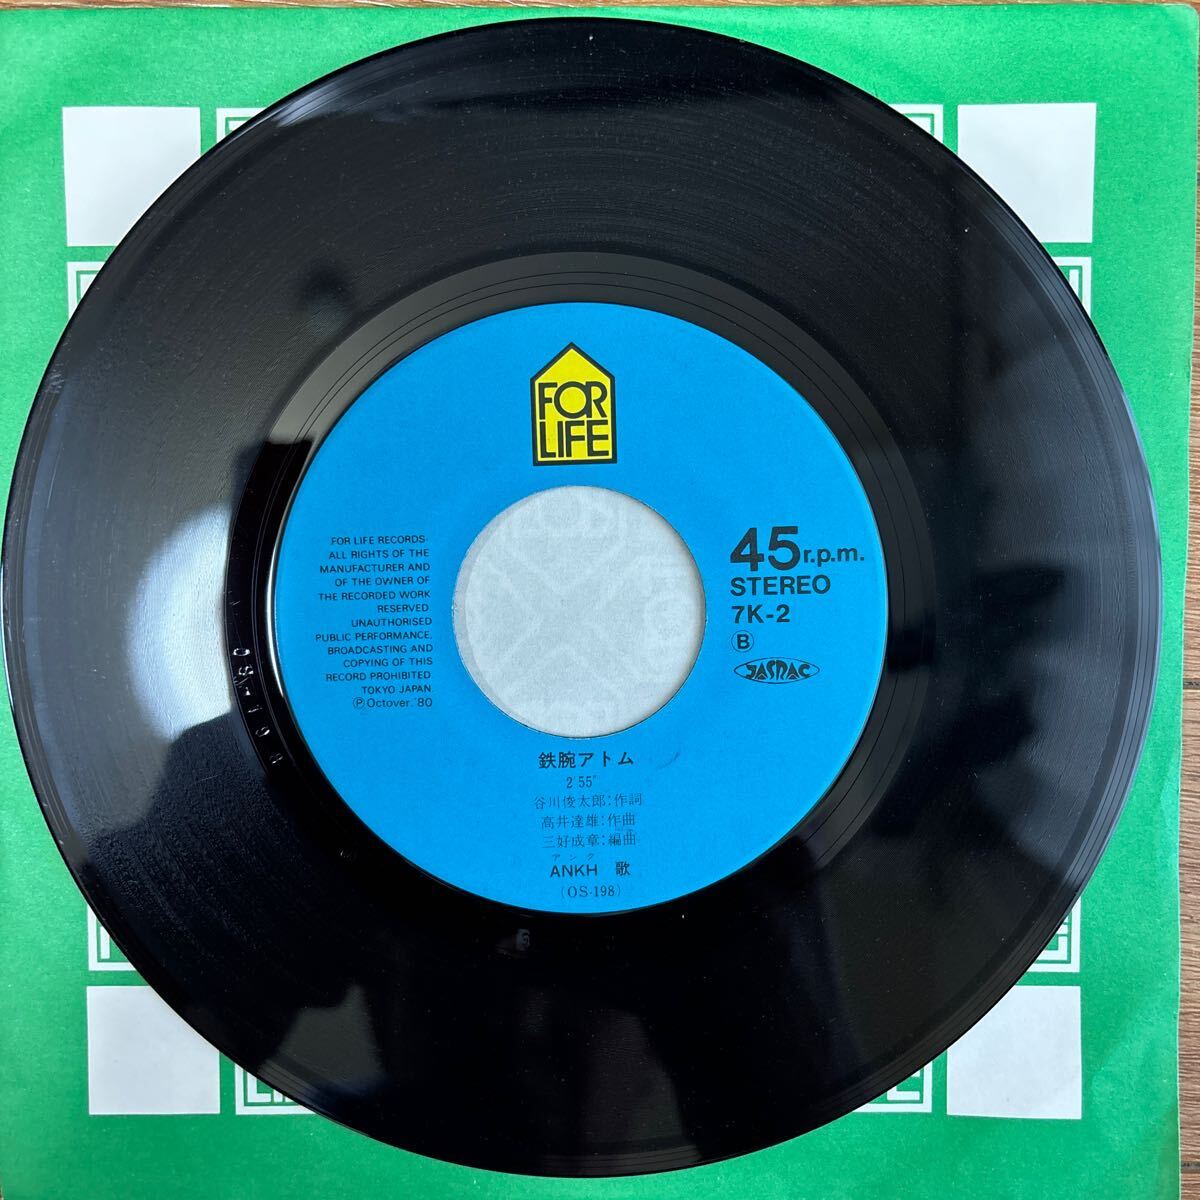 [ запись EP]ANKH ( Anne k)[ будущее . направление ../ Astro Boy ](7K-2 / FOR LIFE) новый Astro Boy NTV* рука . Pro 1980 год used редкость 